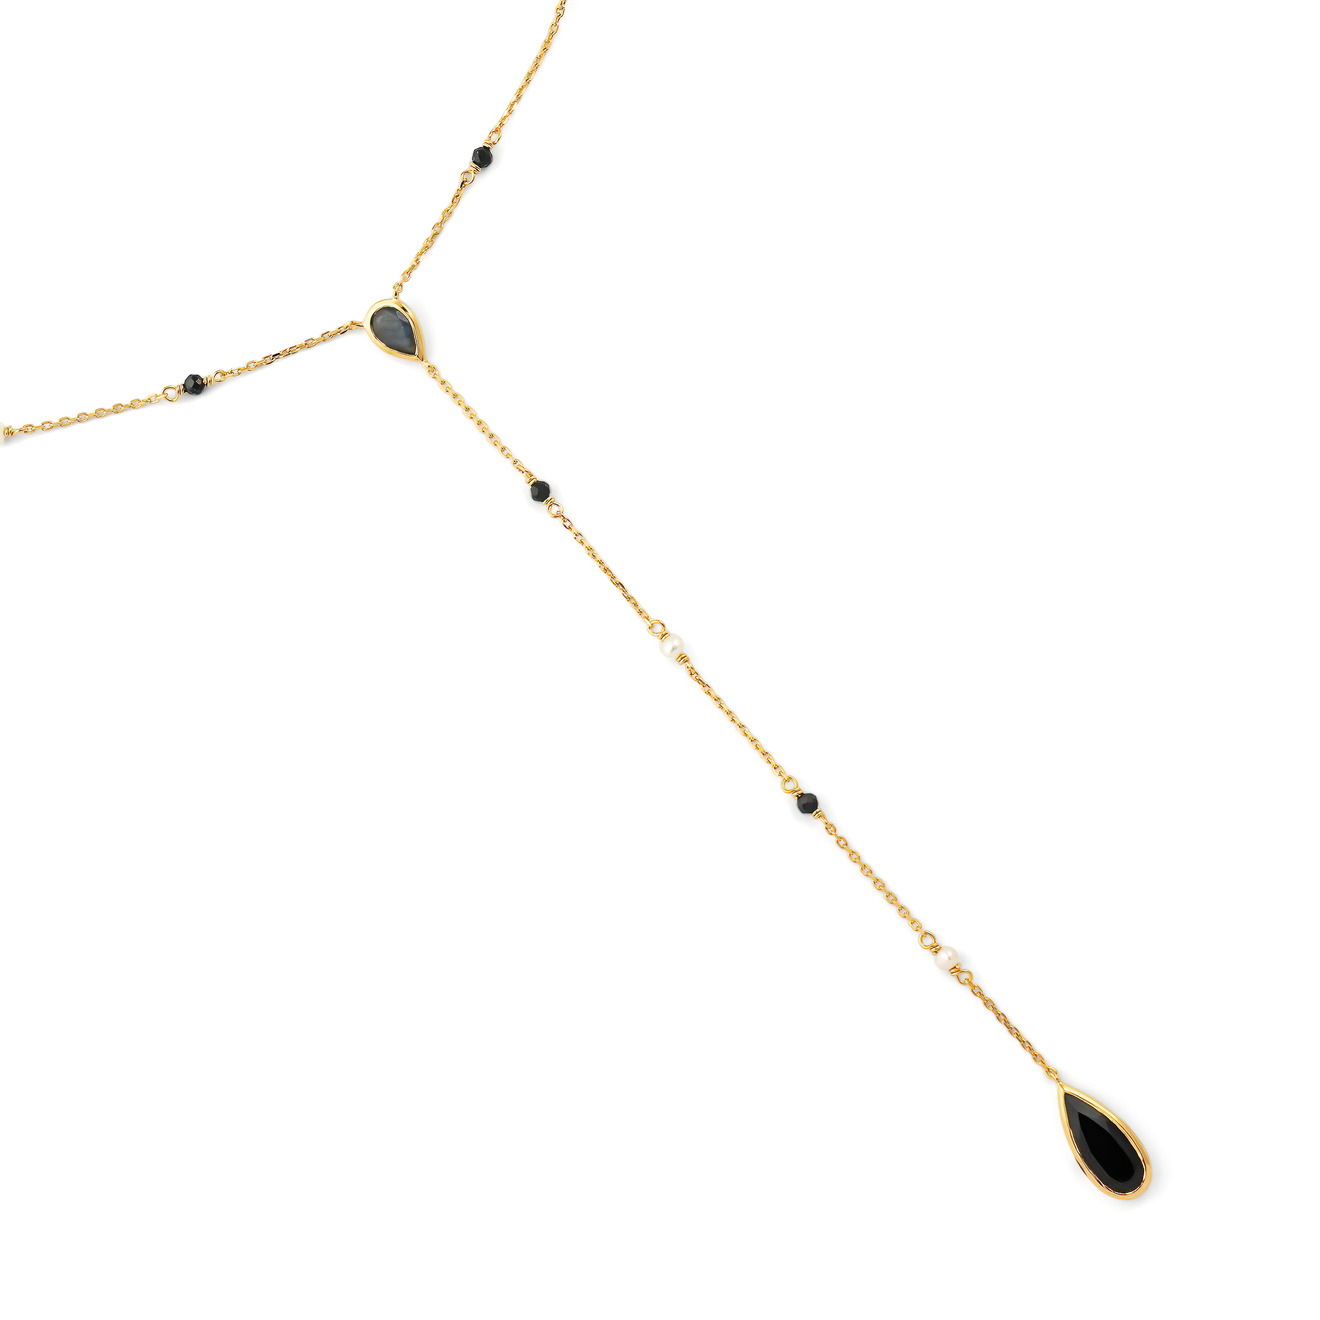 Wisteria Gems Длинное позолоченное колье-галстук с лабрадором, тёмной шпинелью, жемчугом и ониксом ben amun длинное позолоченное колье с двумя кристаллами